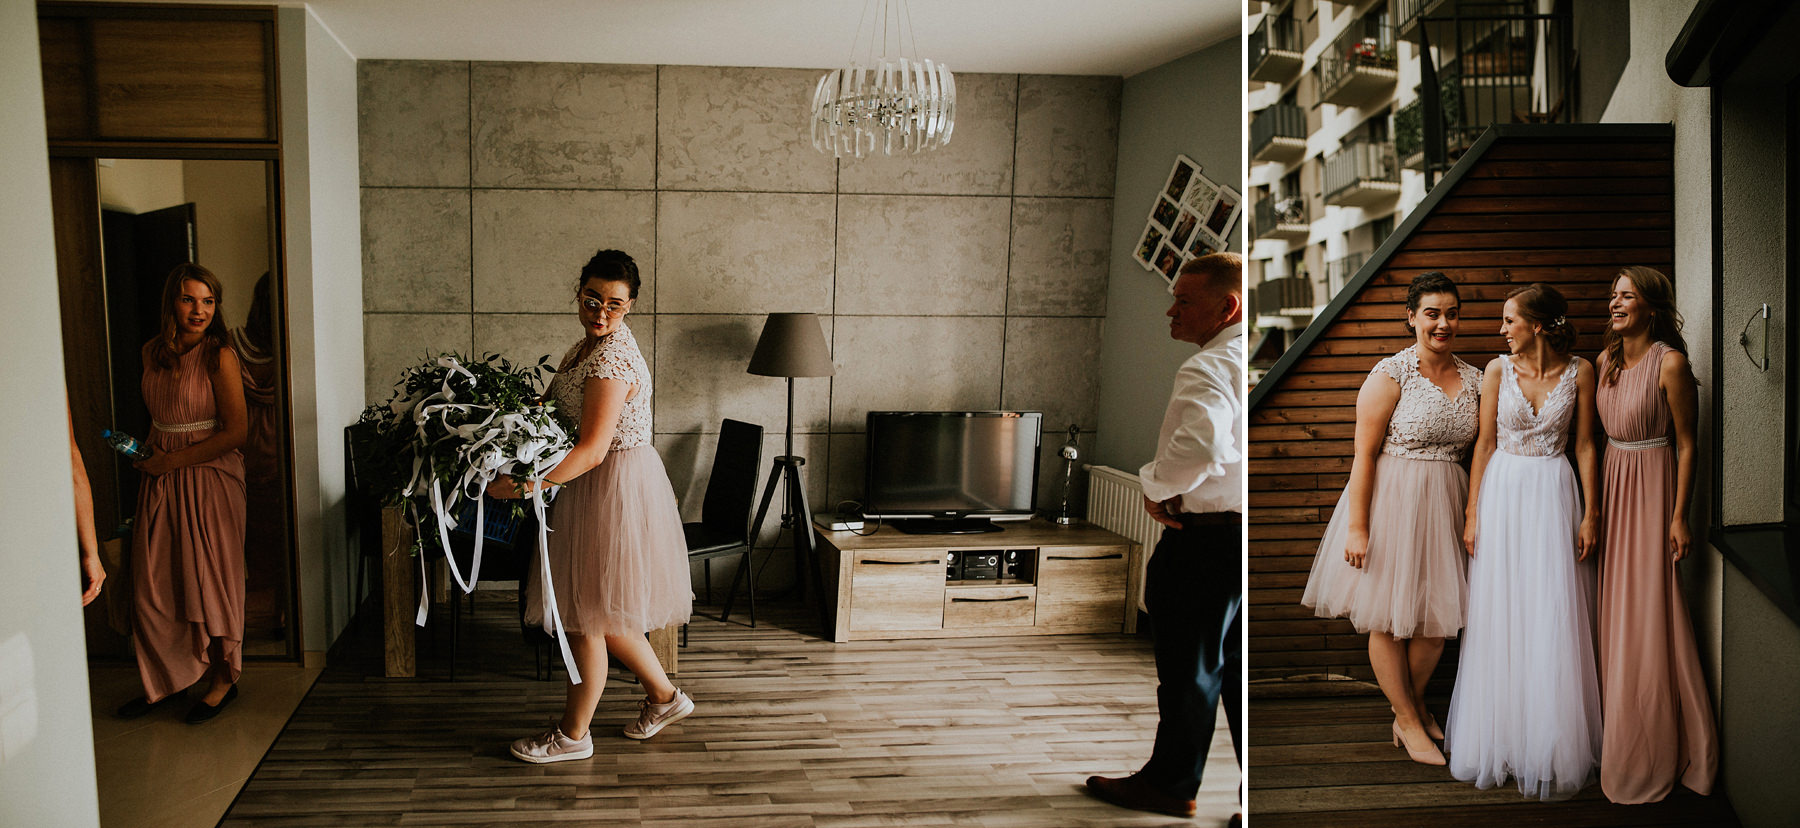 448 wroclaw hotel wodnik wesele namiot slub fotograf krakow wedding karol nycz photography poland